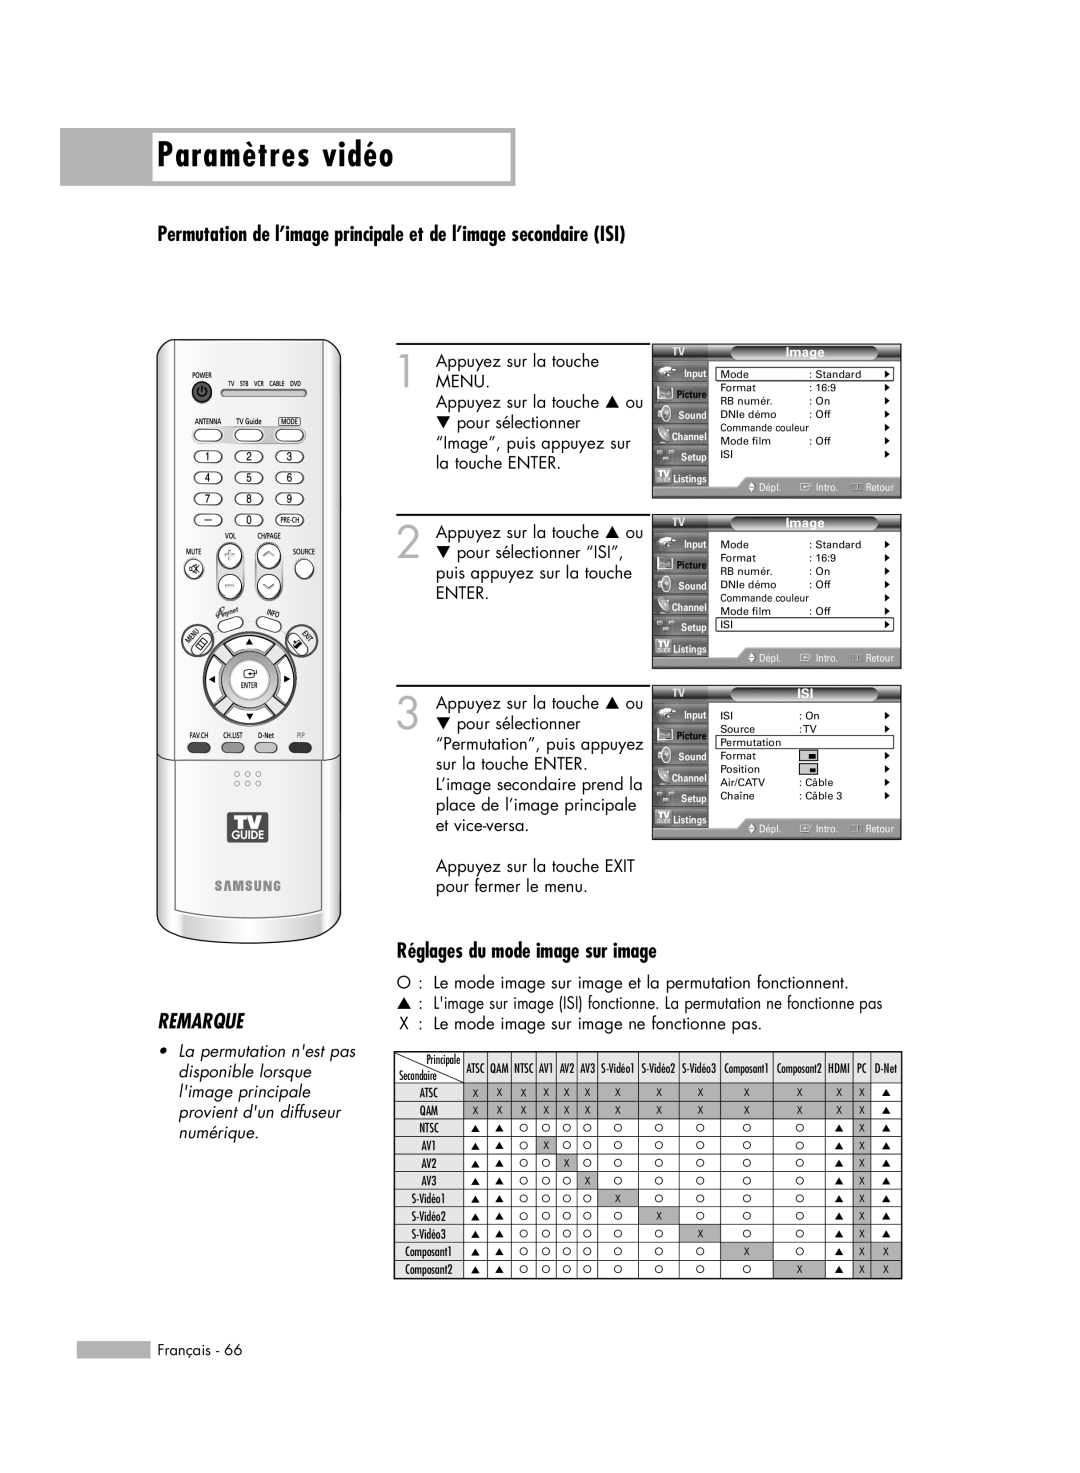 Samsung HL-R5678W manual Réglages du mode image sur image, Paramètres vidéo, Remarque, Français, Image, Dépl, Intro, Retour 